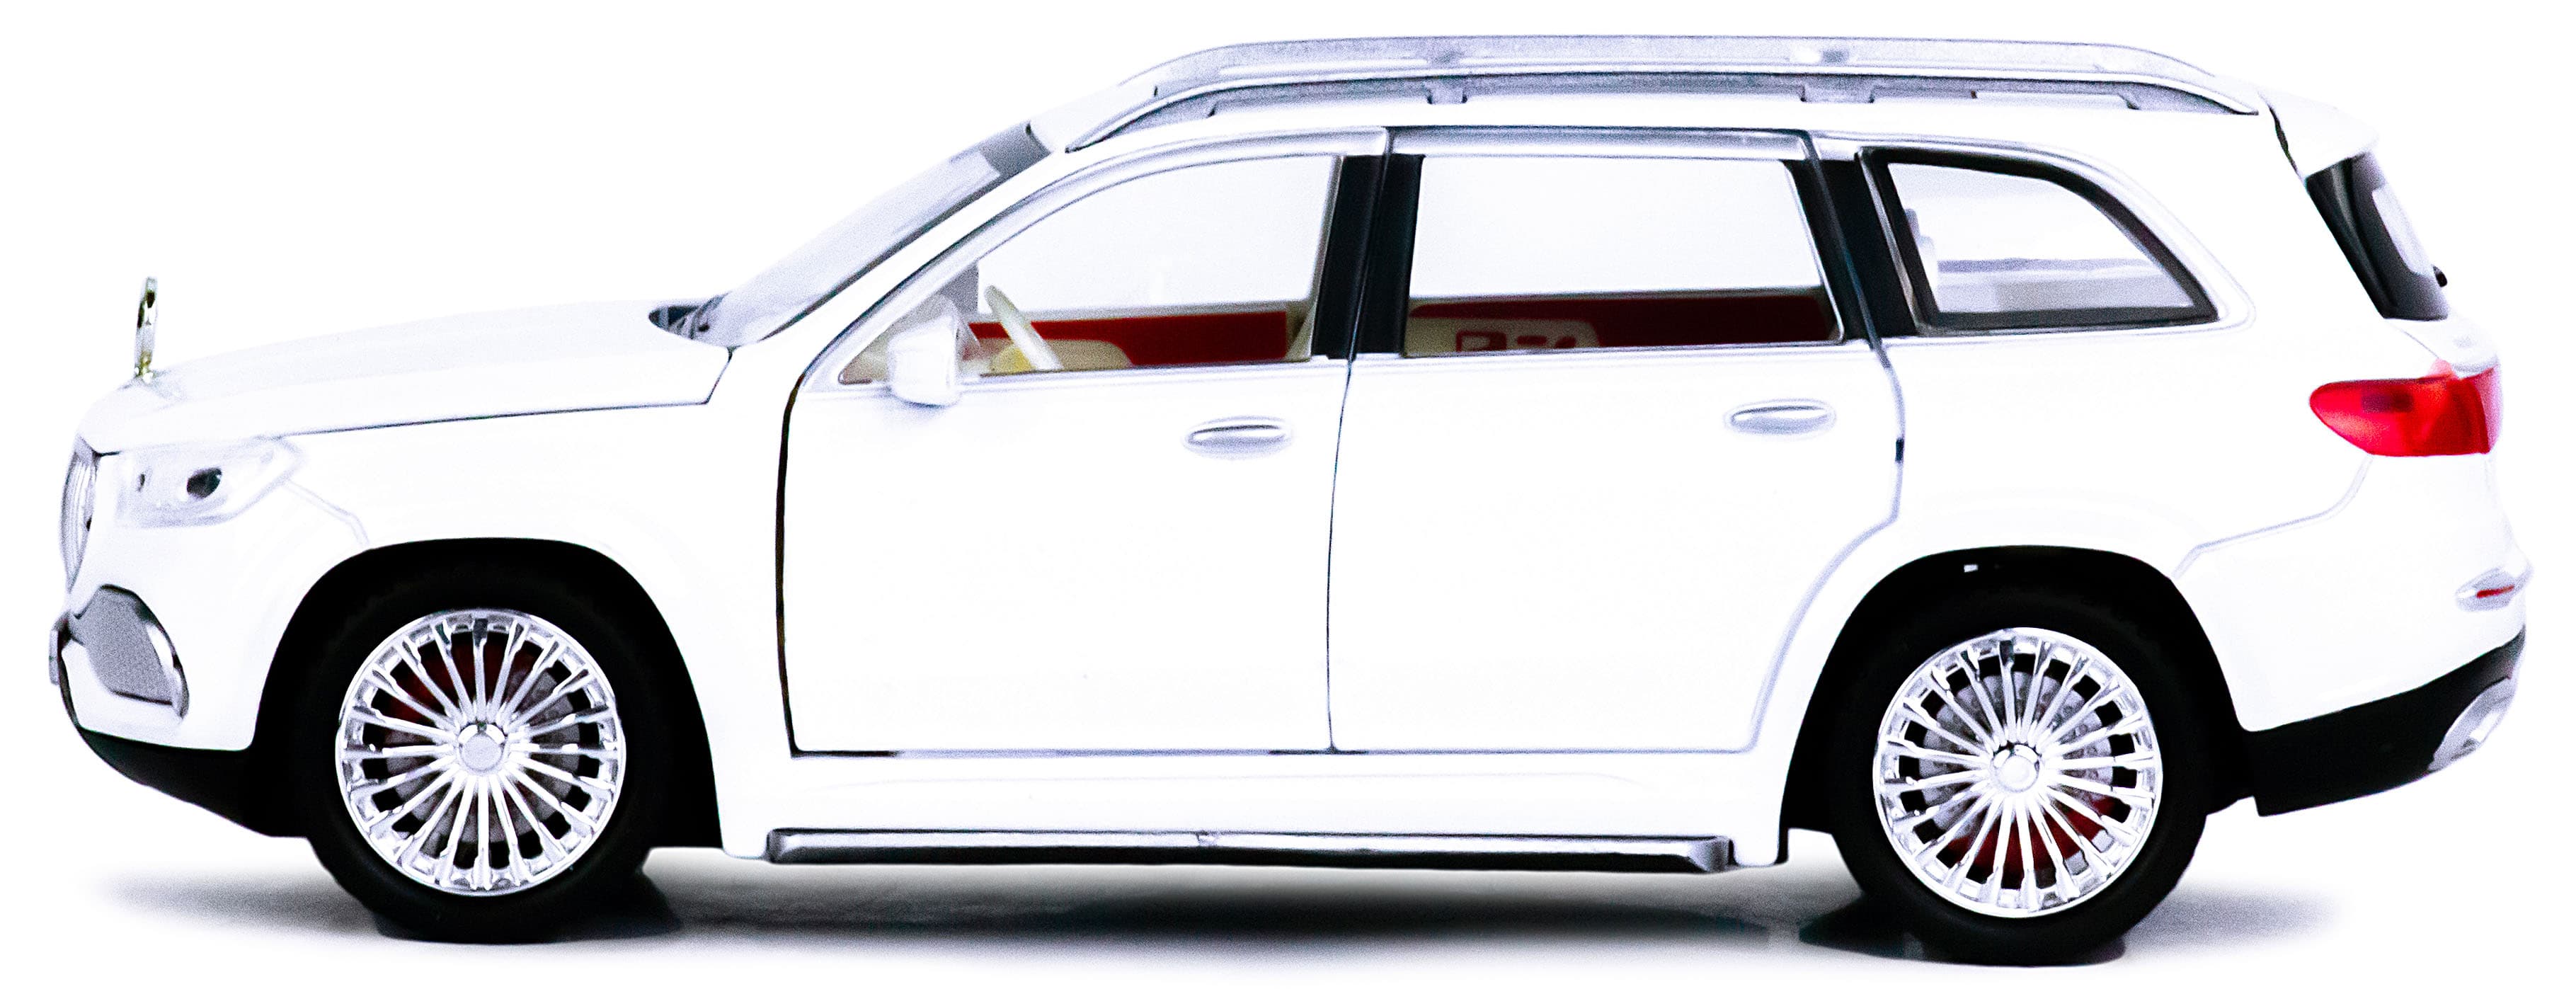 Машинка металлическая SIONRAY 1:24 «Mercedes-Benz Maybach GLS 600» SR-2404A 22 см. инерционная, свет, звук / Белый